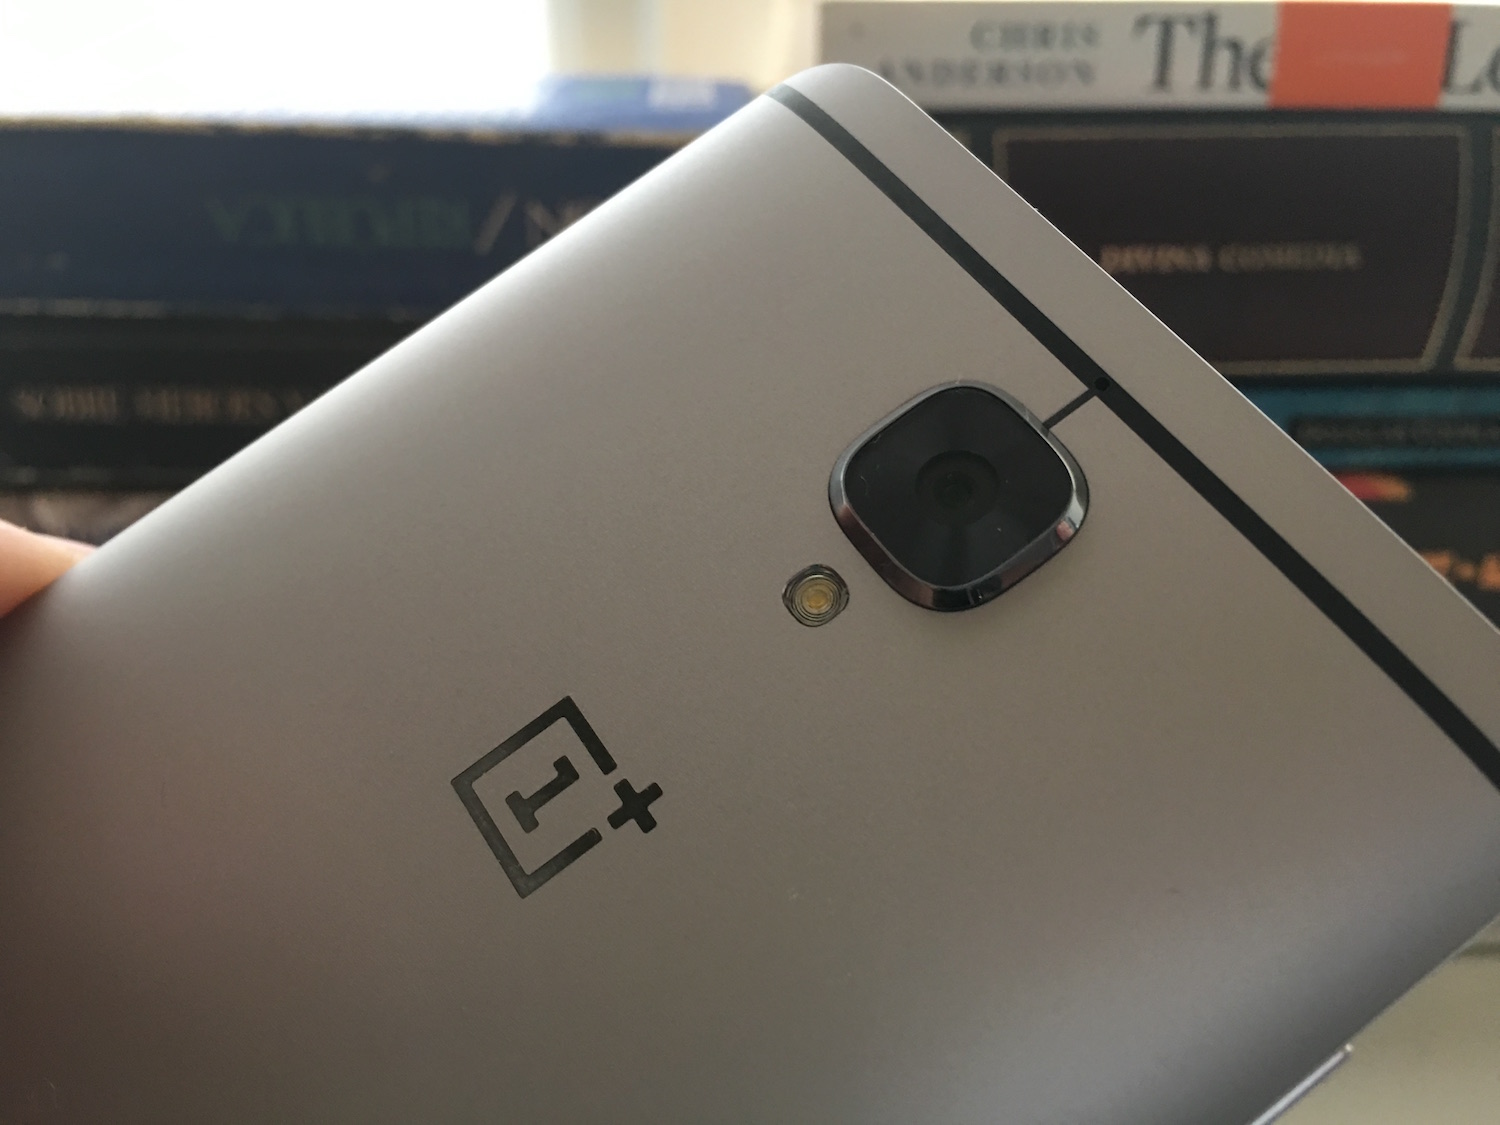 El OnePlus 3 cuenta con una cámara que cumple